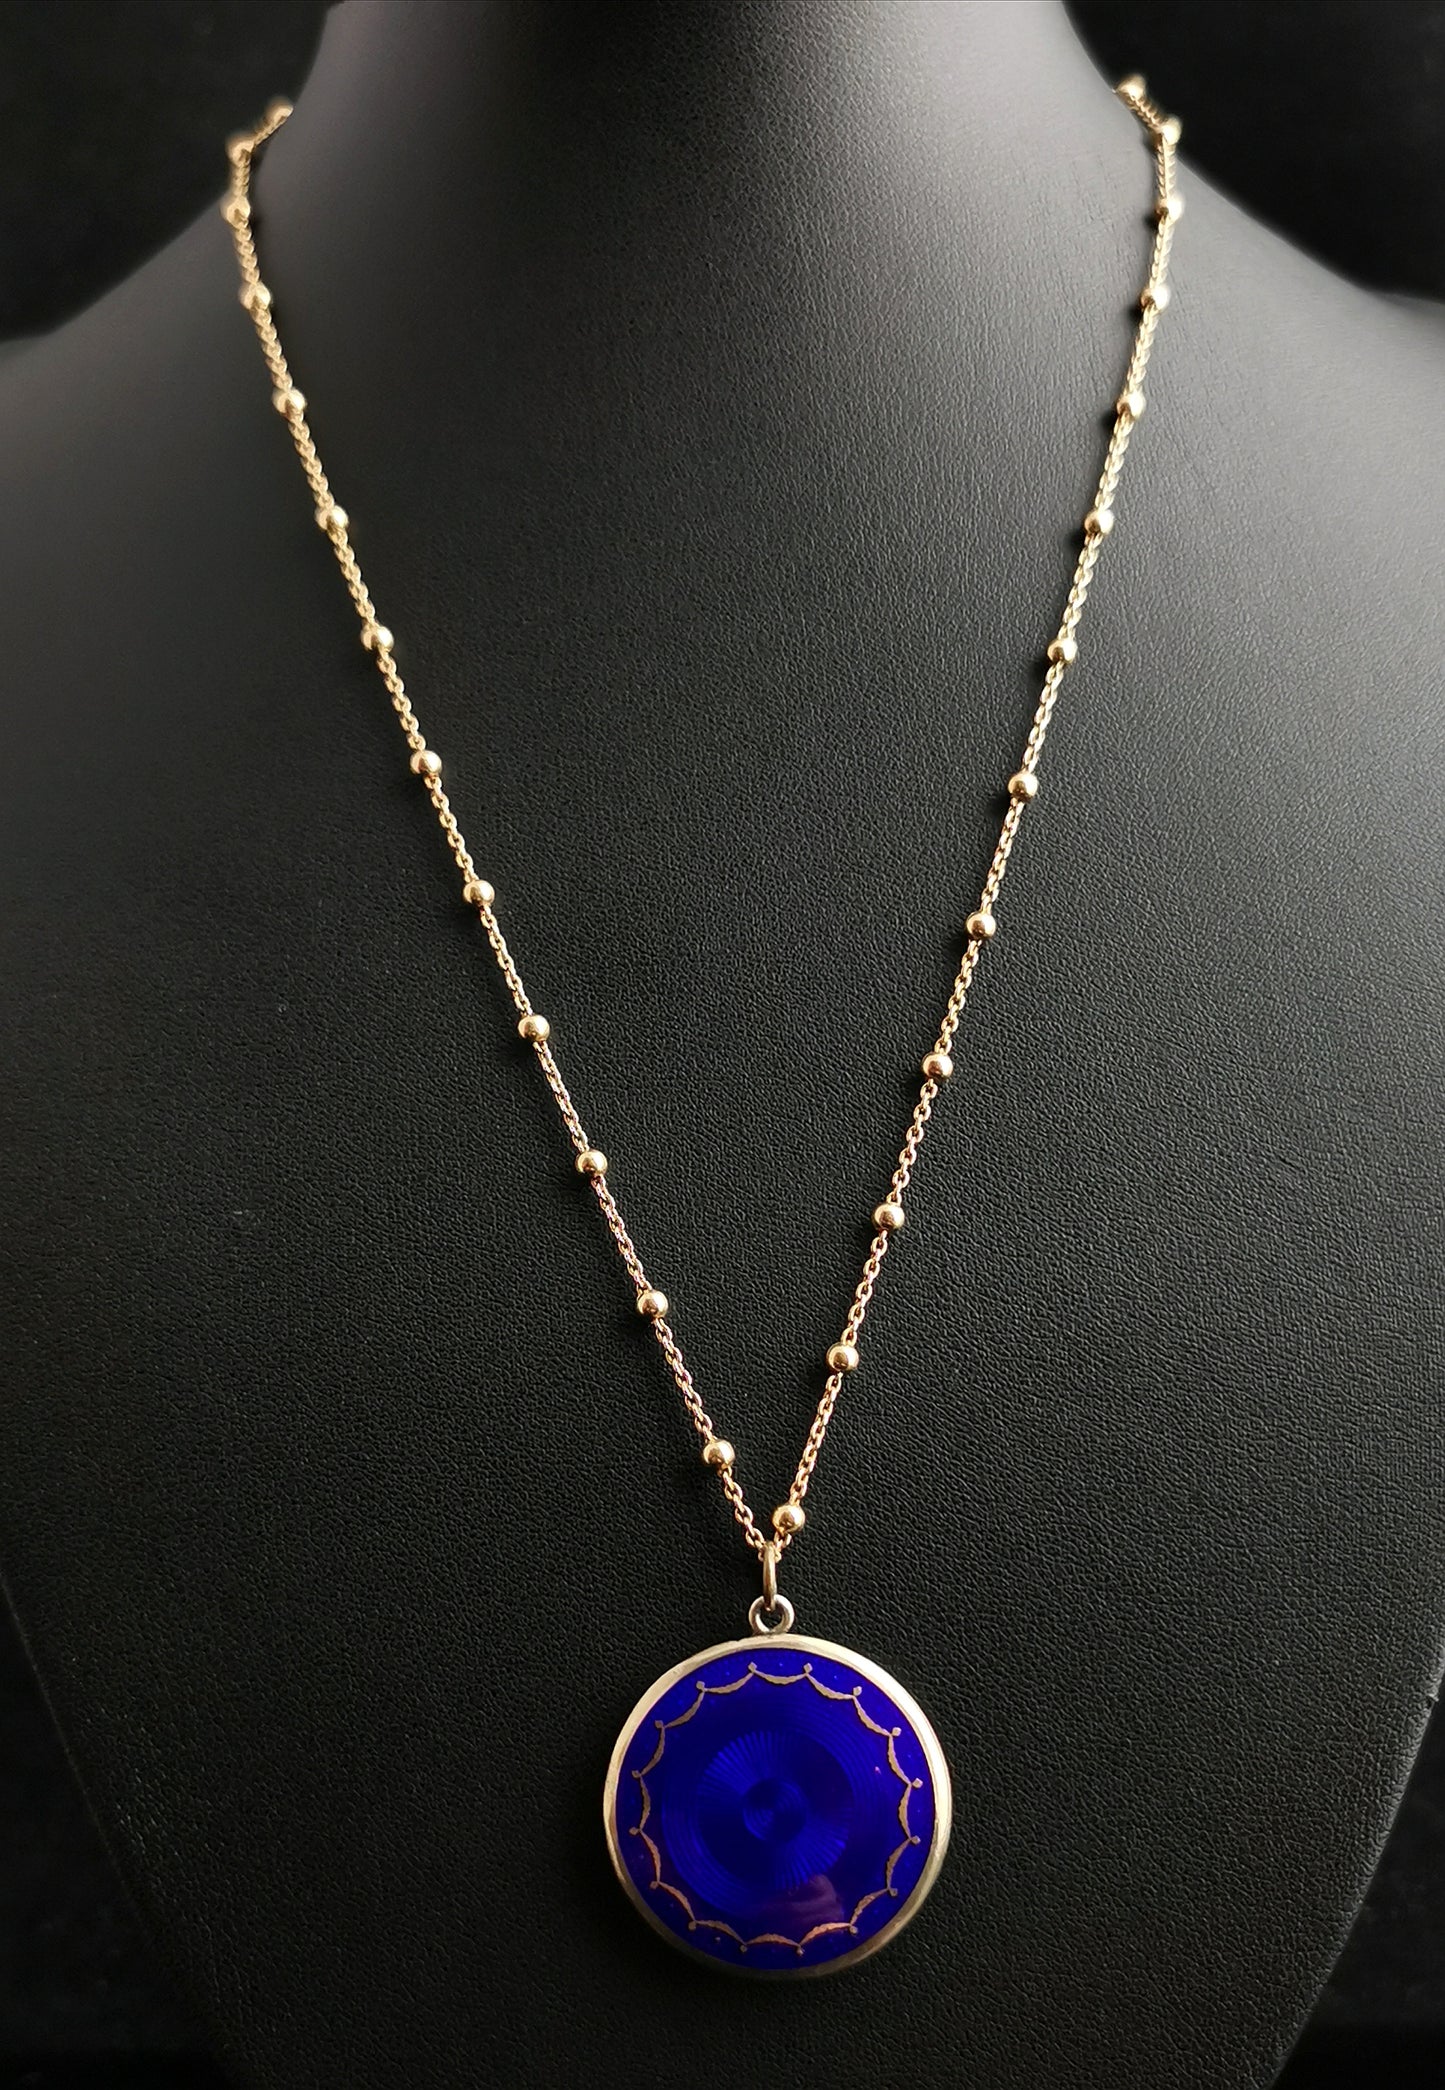 Antique Art Deco Guilloche enamel pendant, cobalt blue, Fancy link necklace